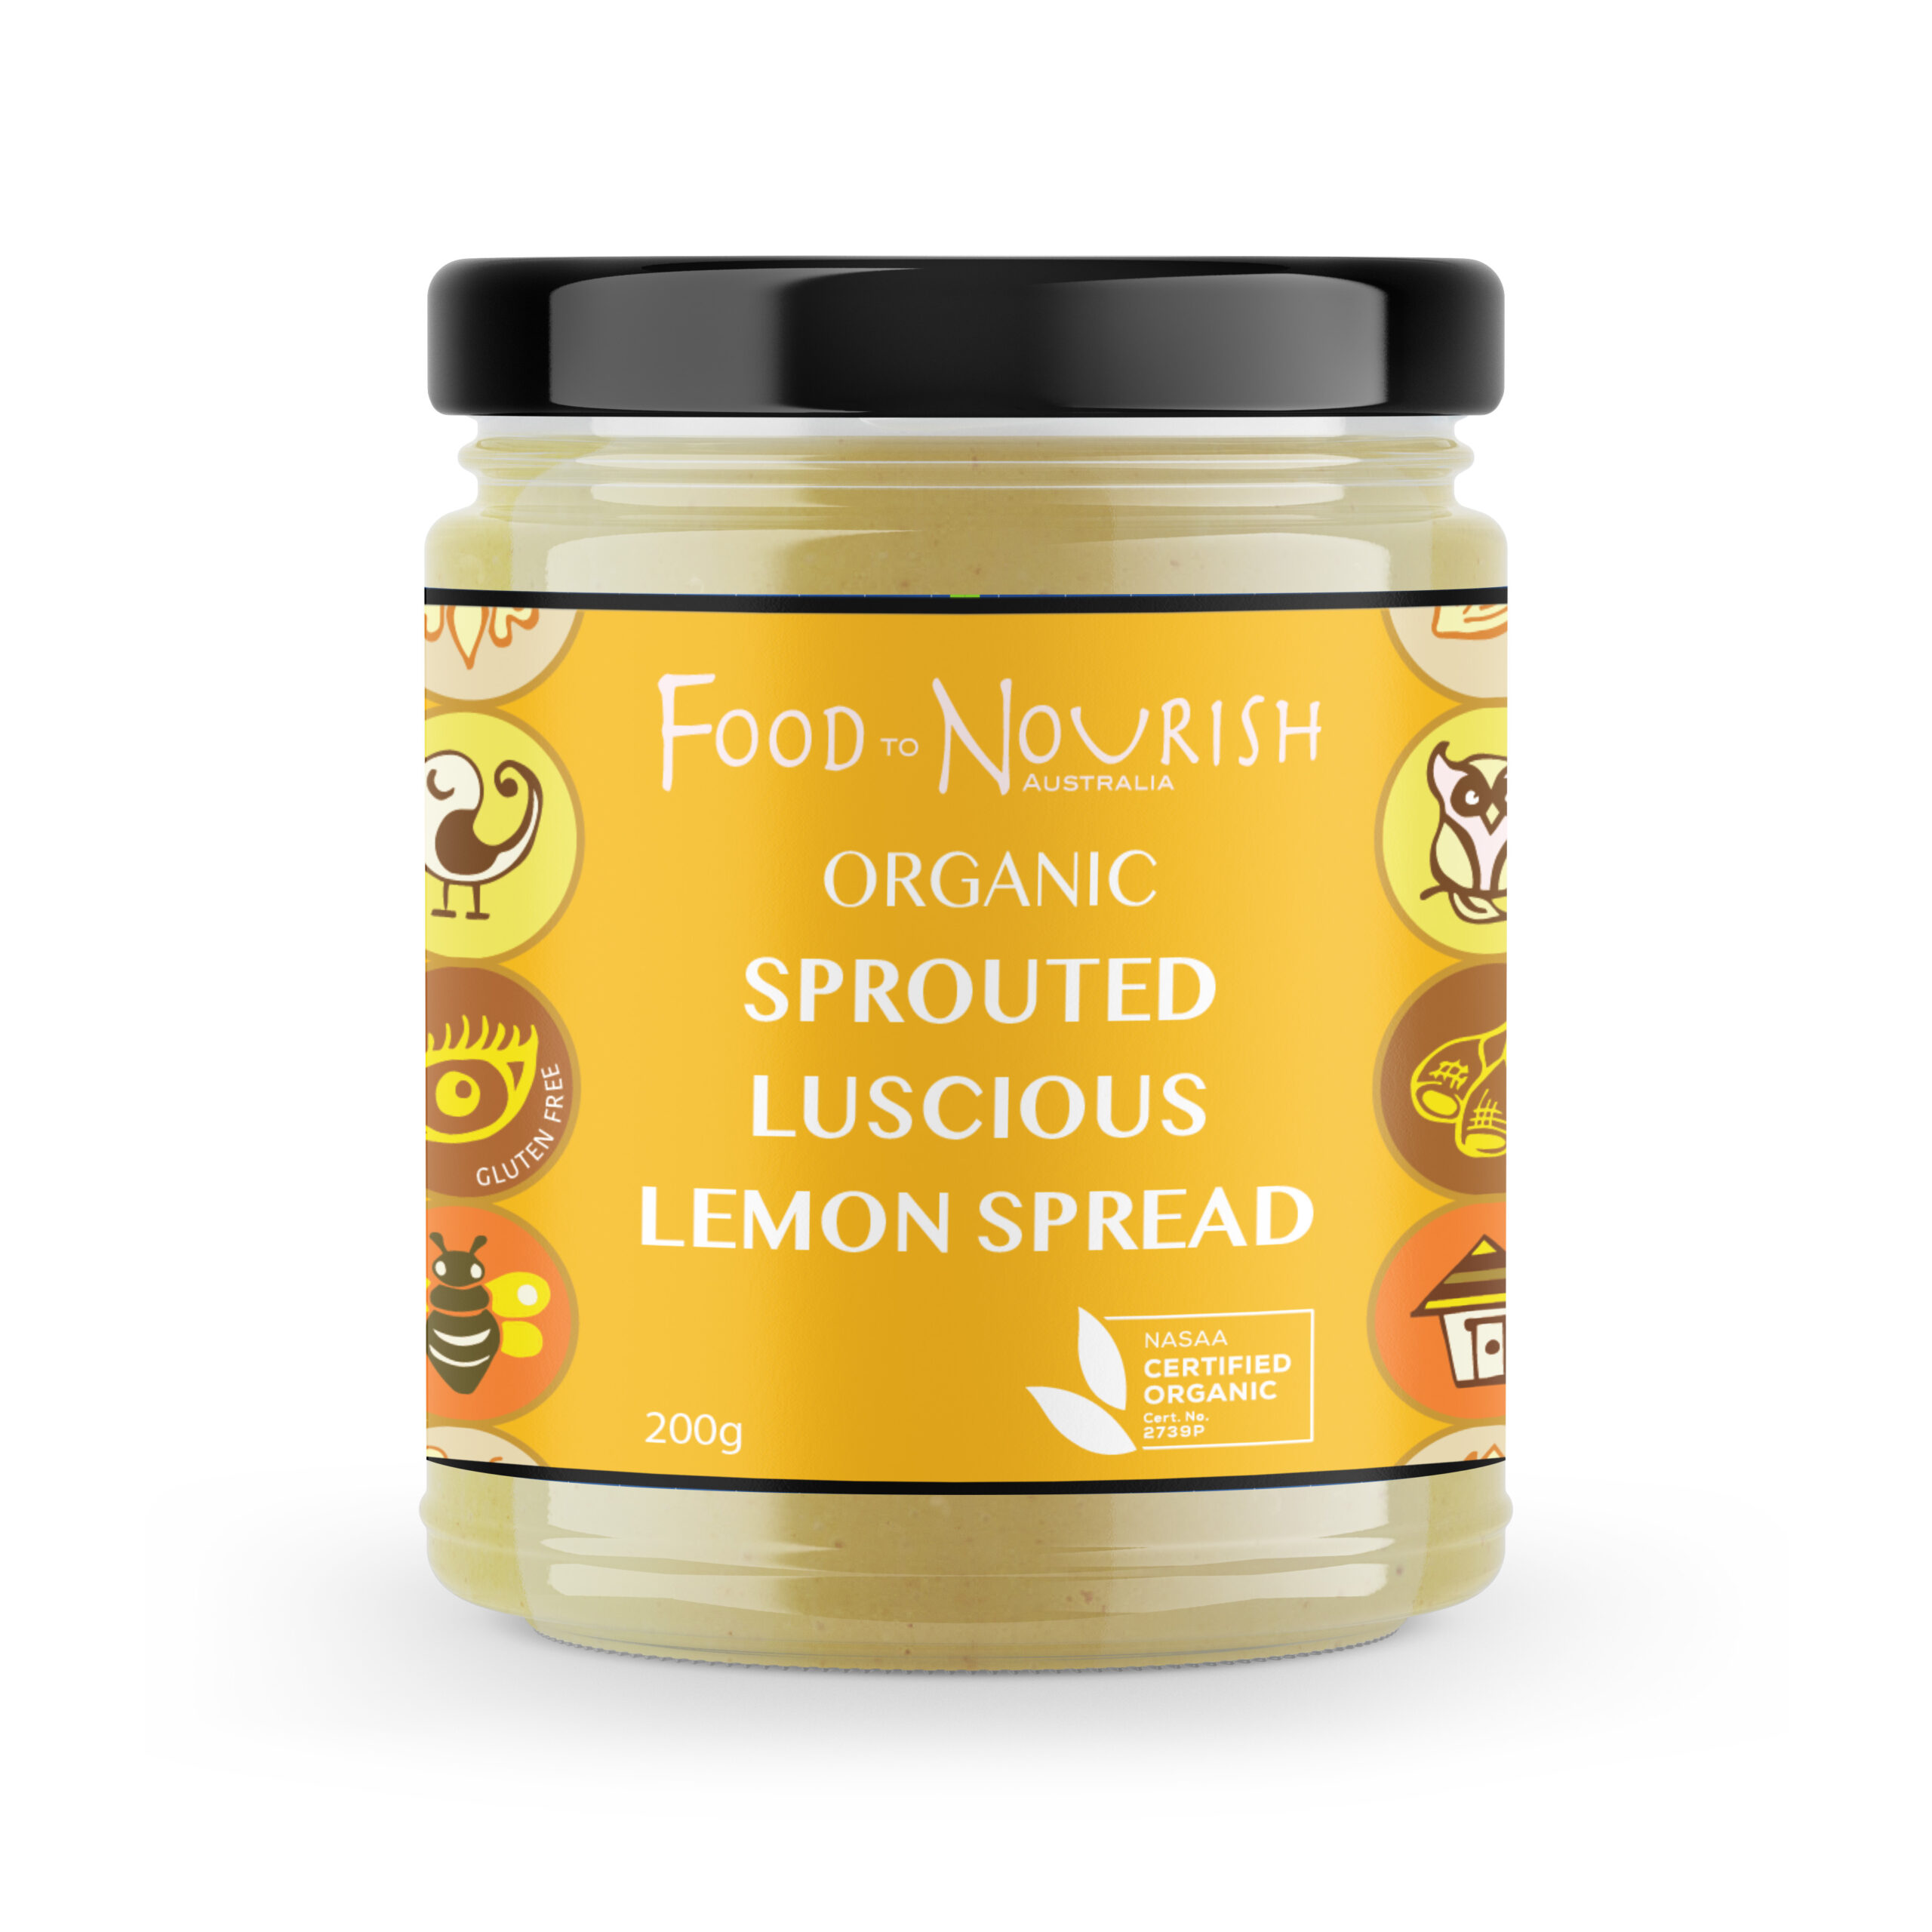 Food to Nourish Luscious Lemon Spread